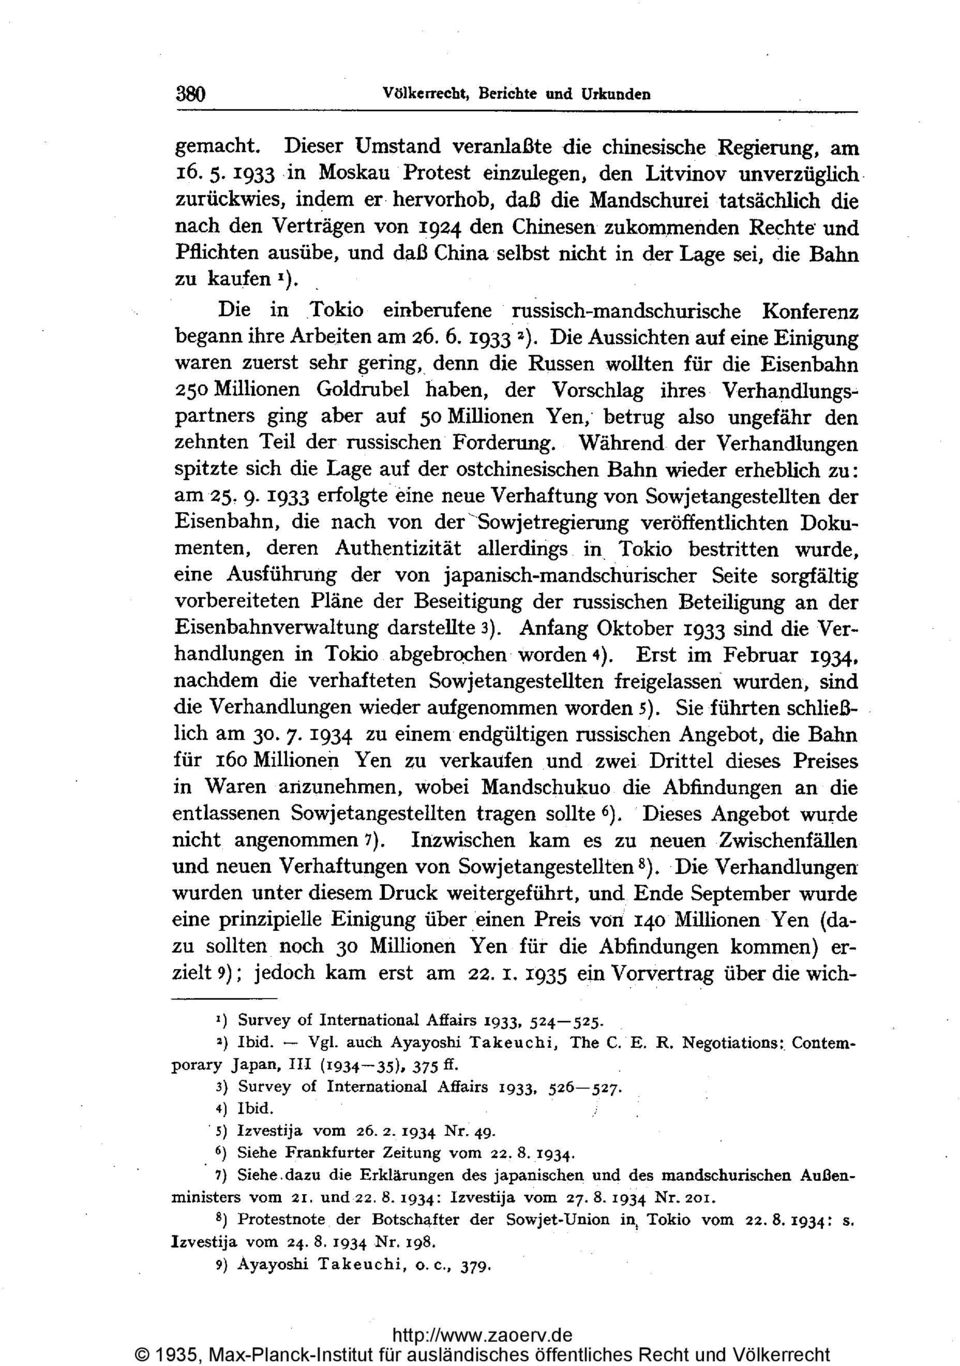 Pflichten ausübe, und daß China,selbst nicht in der Lage sei, die Bahn zu kaufen Die in Tokio einberufene russisch-mandschurische Konferenz begann ihre Arbeiten am 26. 6. 1933 z).